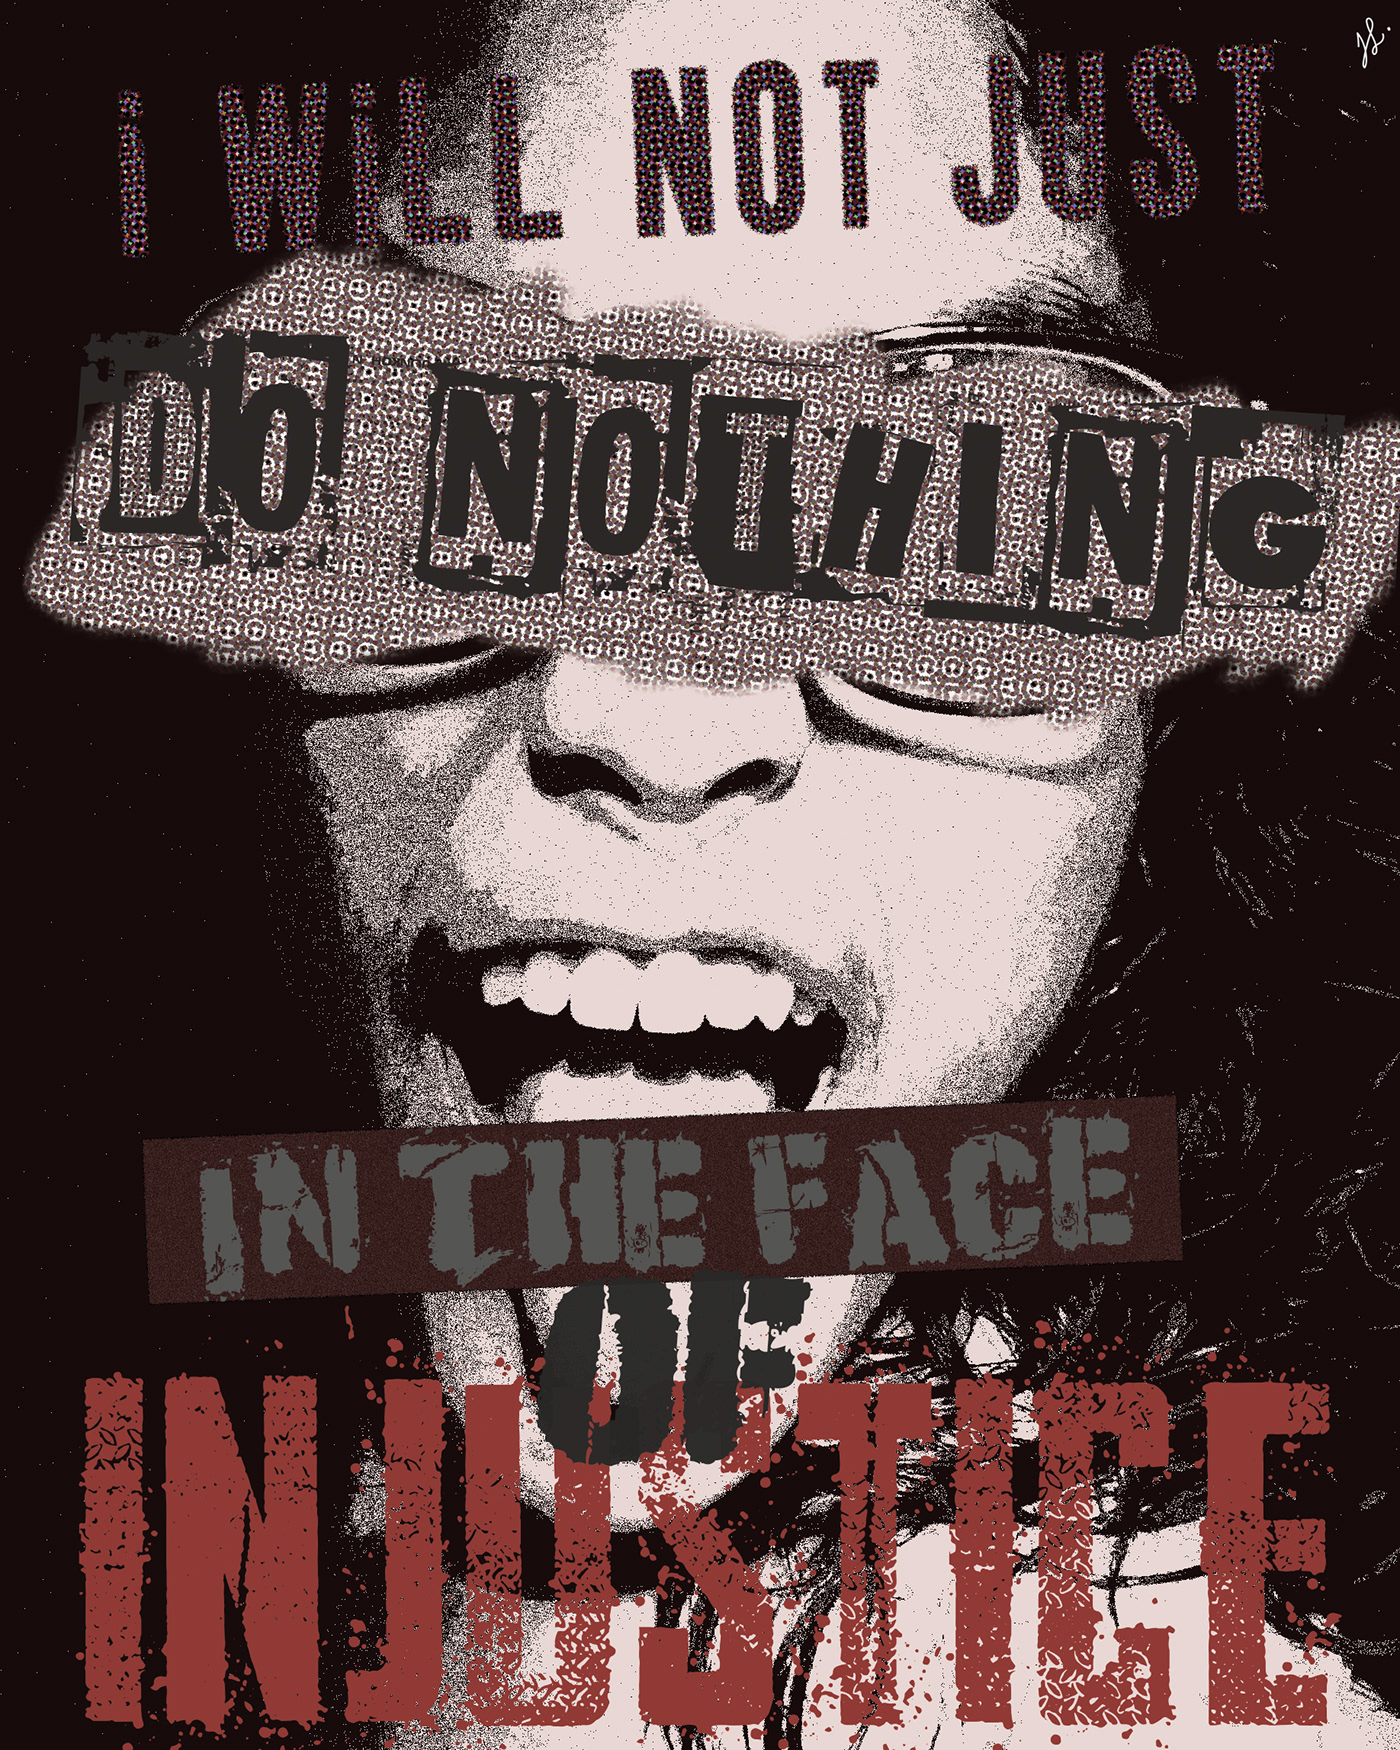 Justice rebel punk raster typography   grunge poster ILLUSTRATION  Digital Art  injustice